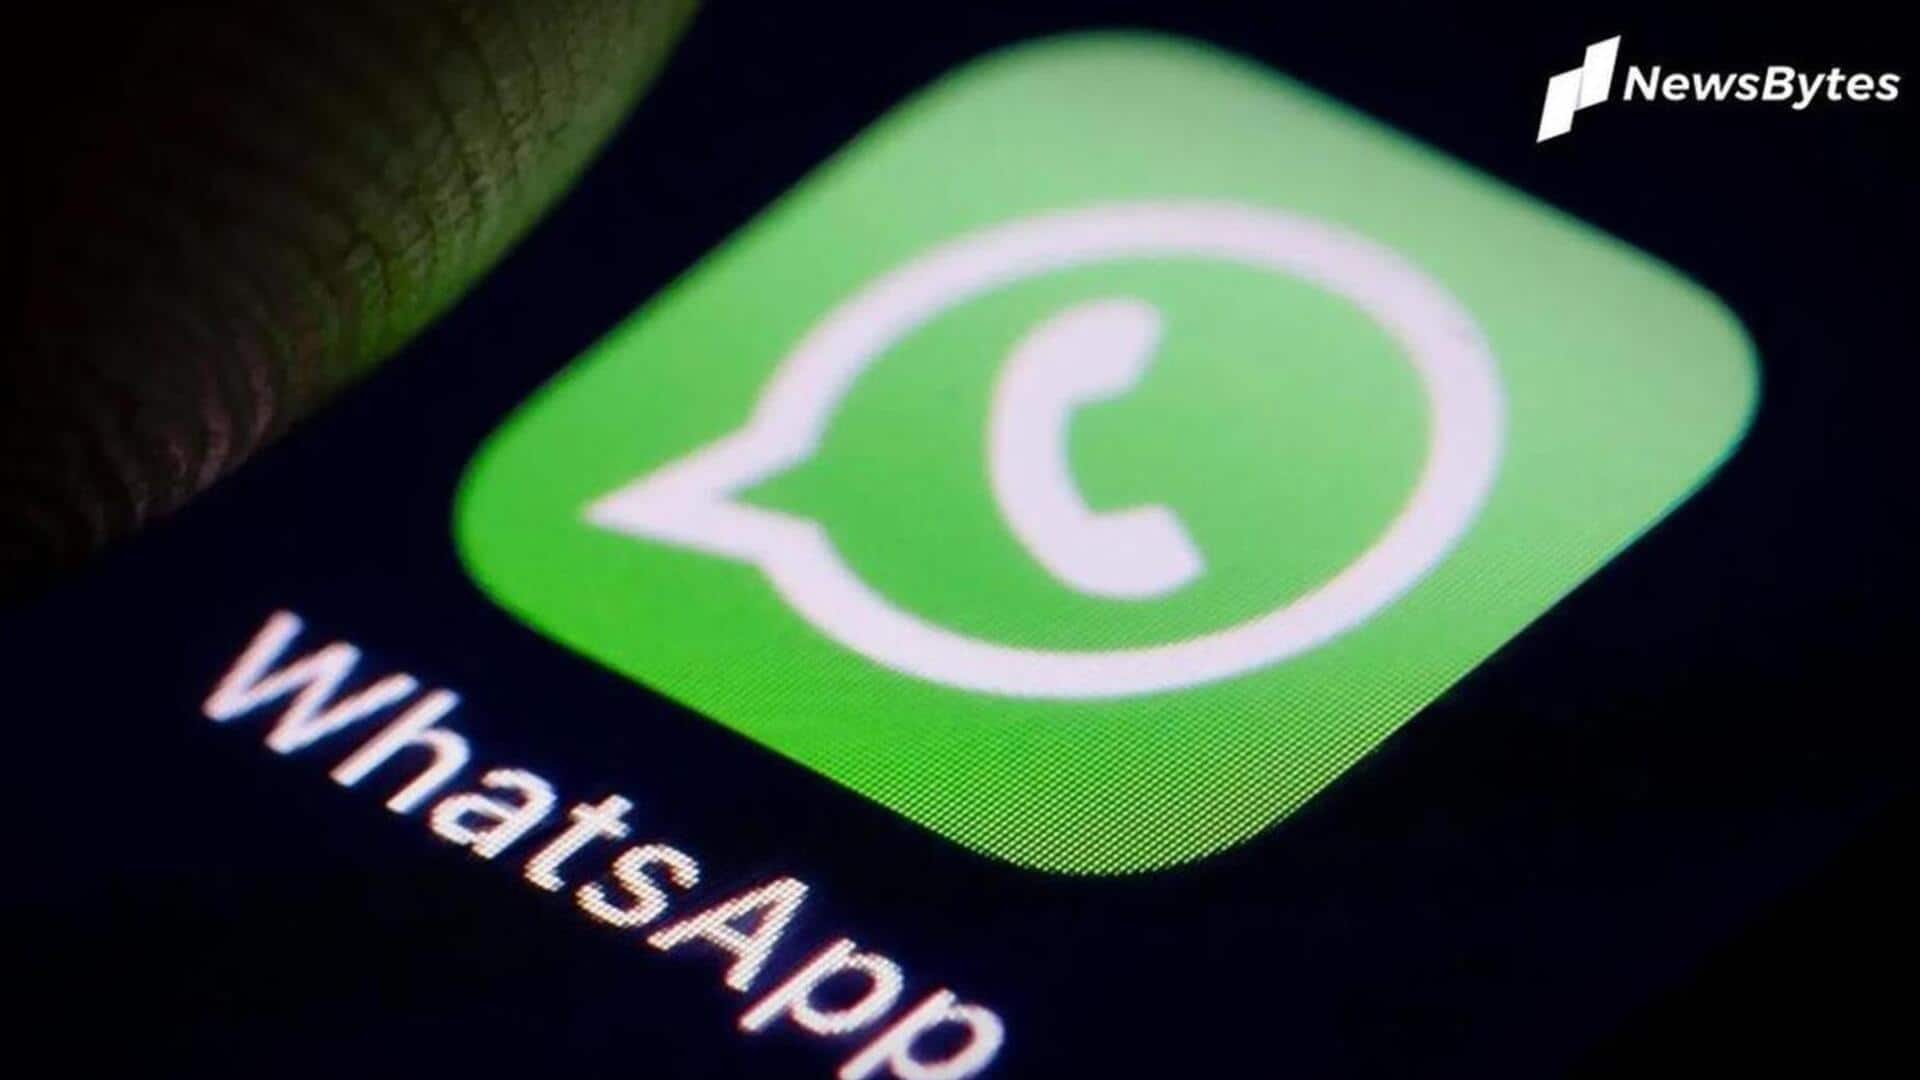 व्हाट्सऐप का नया फीचर, कम्युनिटी अनाउंसमेंट ग्रुप में अब मैसेज पर रिएक्शन दे सकेंगे यूजर्स